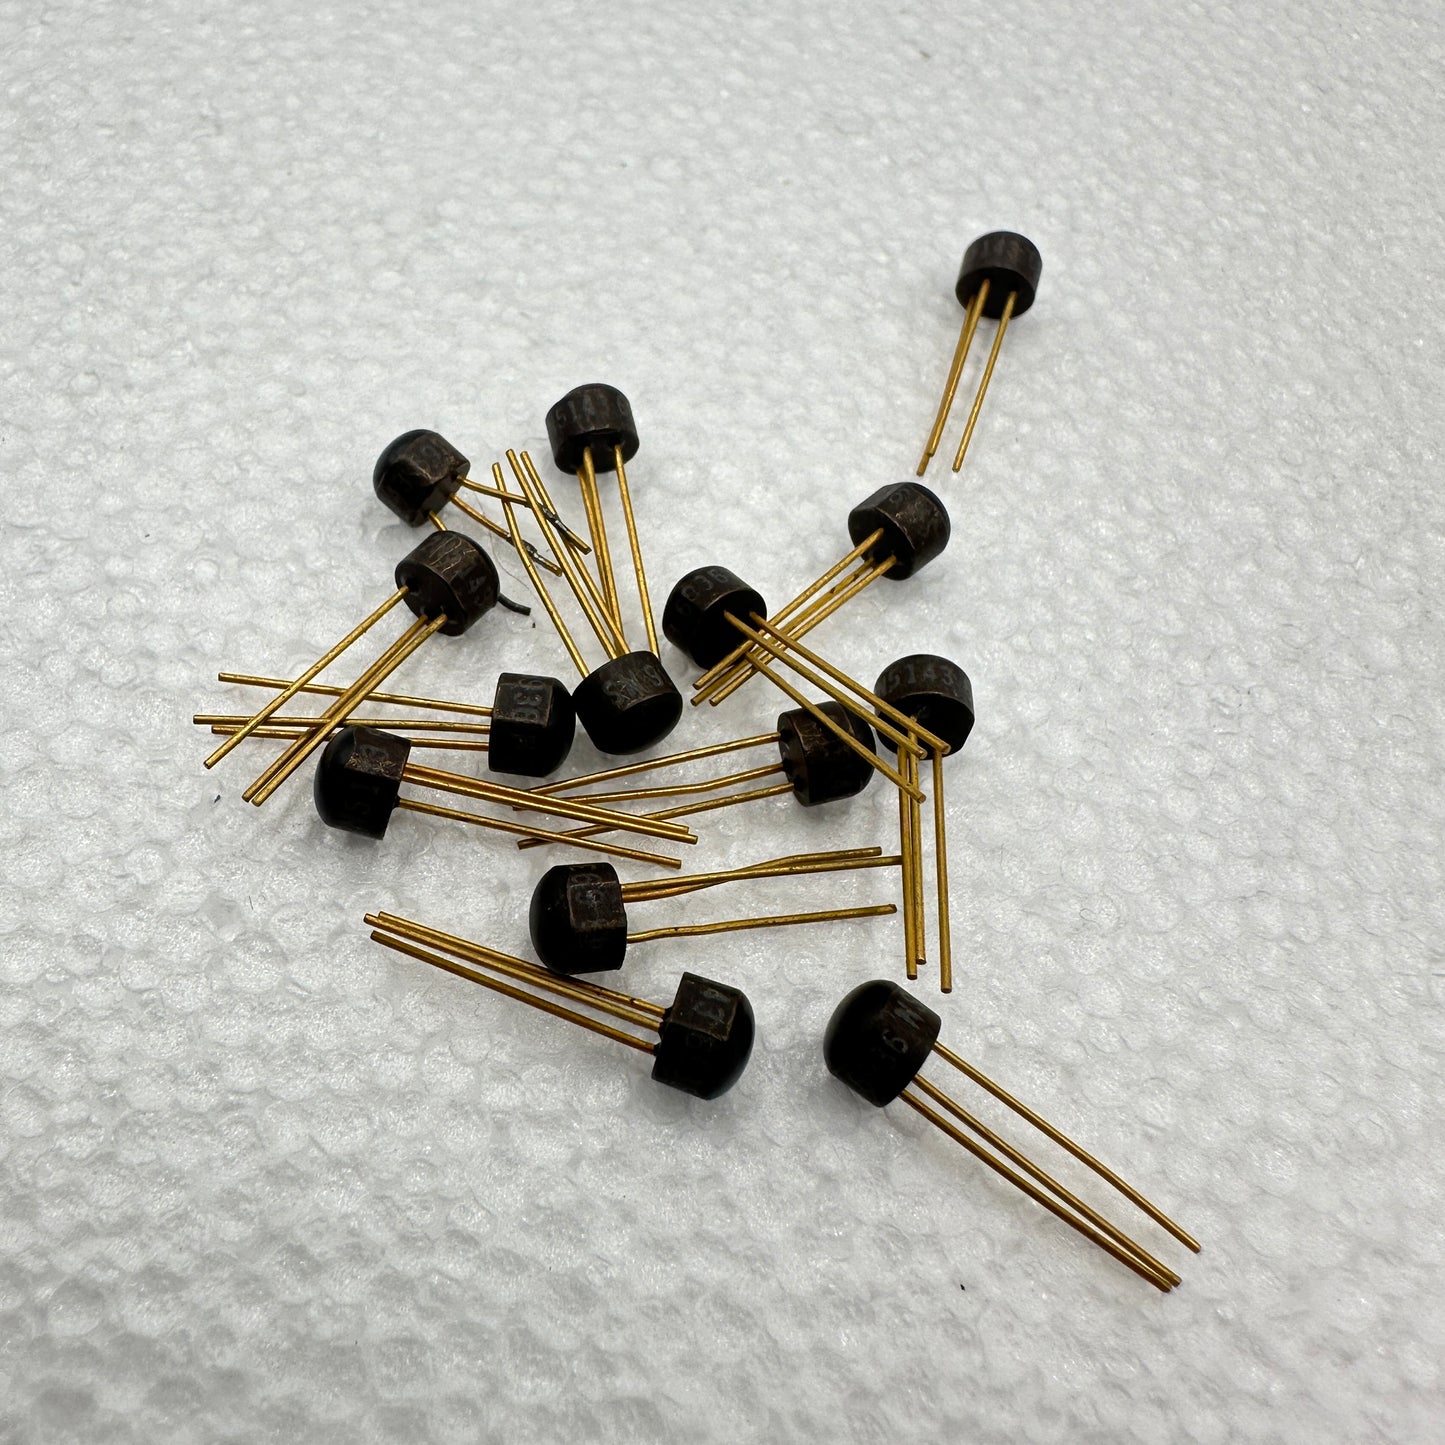 2N5143 Silicon Transistor NOS - Rare & Reclaimed